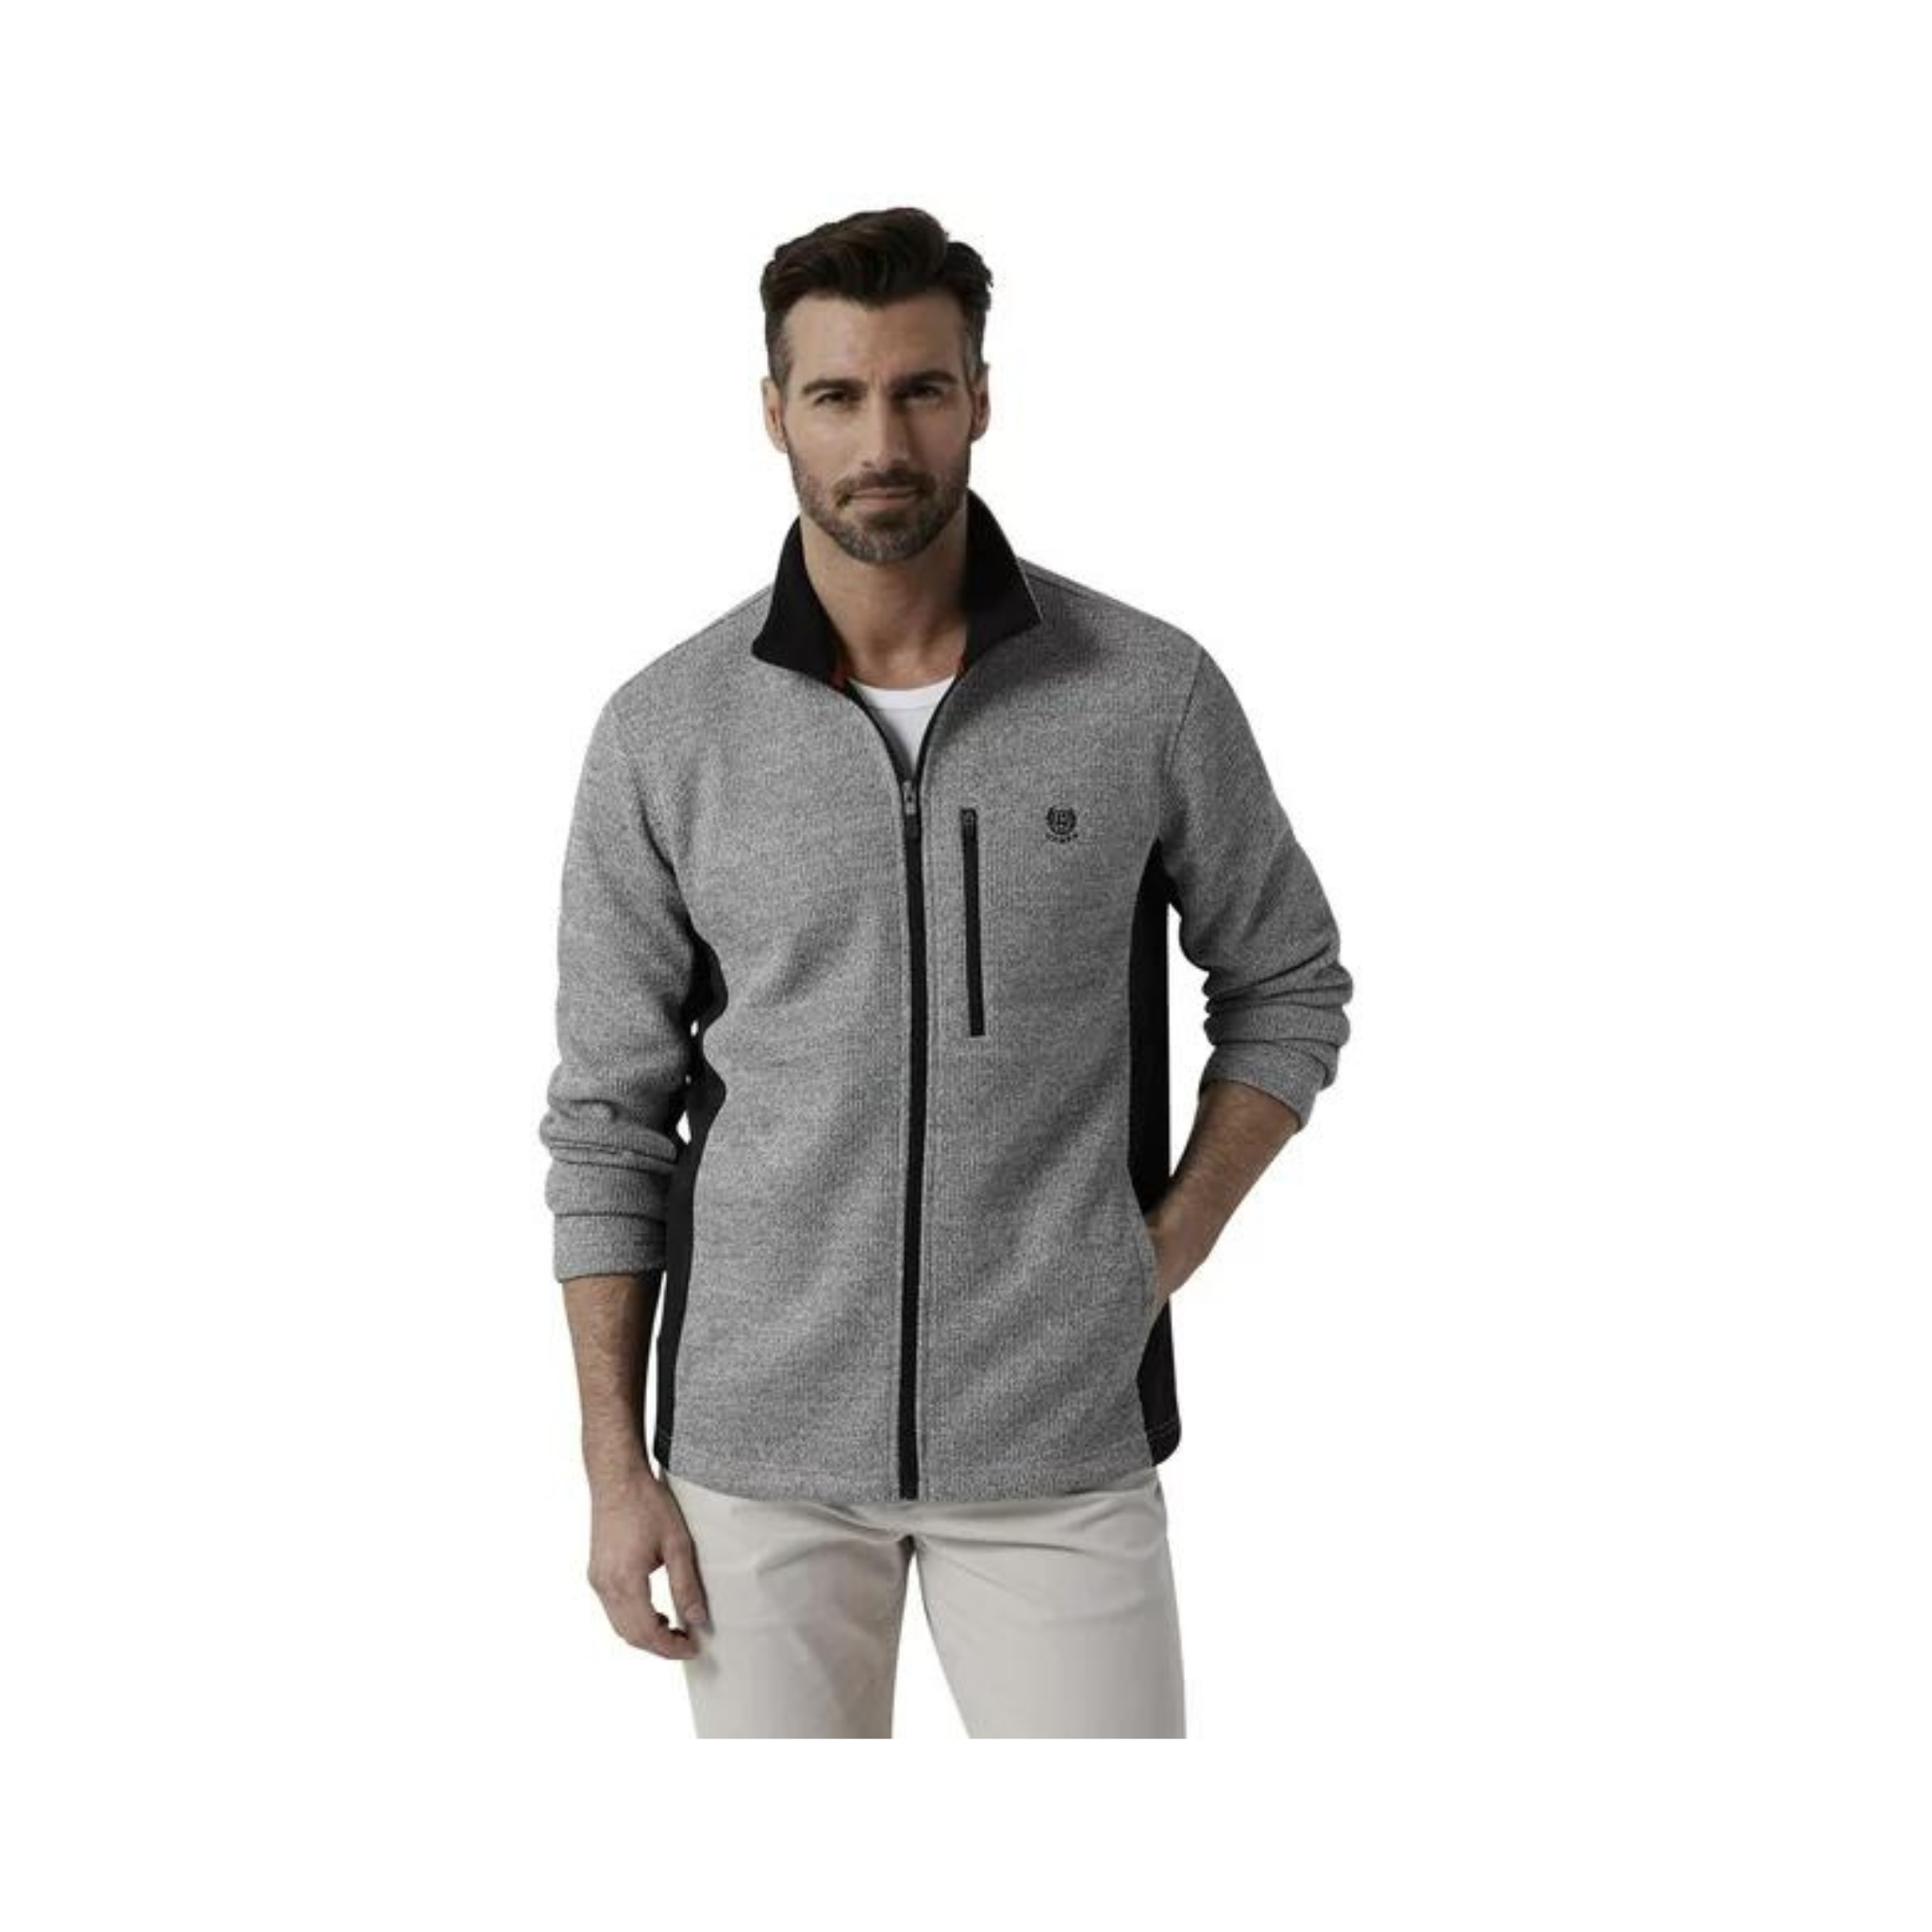 Chaps Men's Performance Full Zip Fleece Jacket (3 Colors, Regular or Big & Tall)